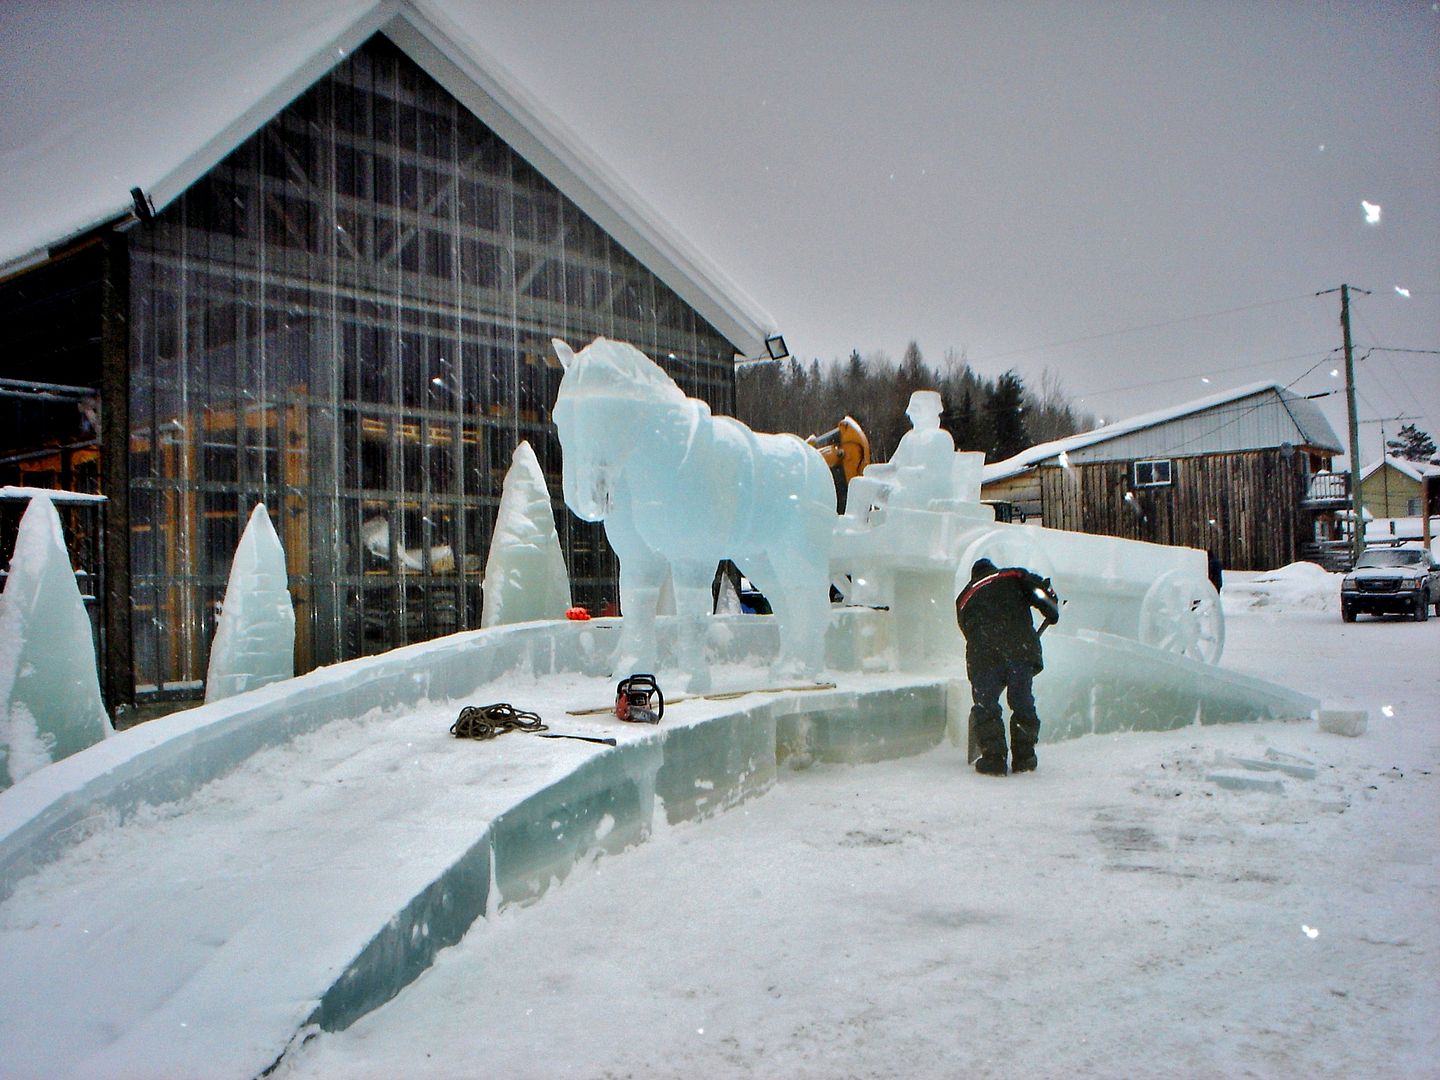 Joliette/St-Côme/St-Zénon festival sculpture de glace Photo ride-report 2février2019 DSC00353_zpsnyq0qghc